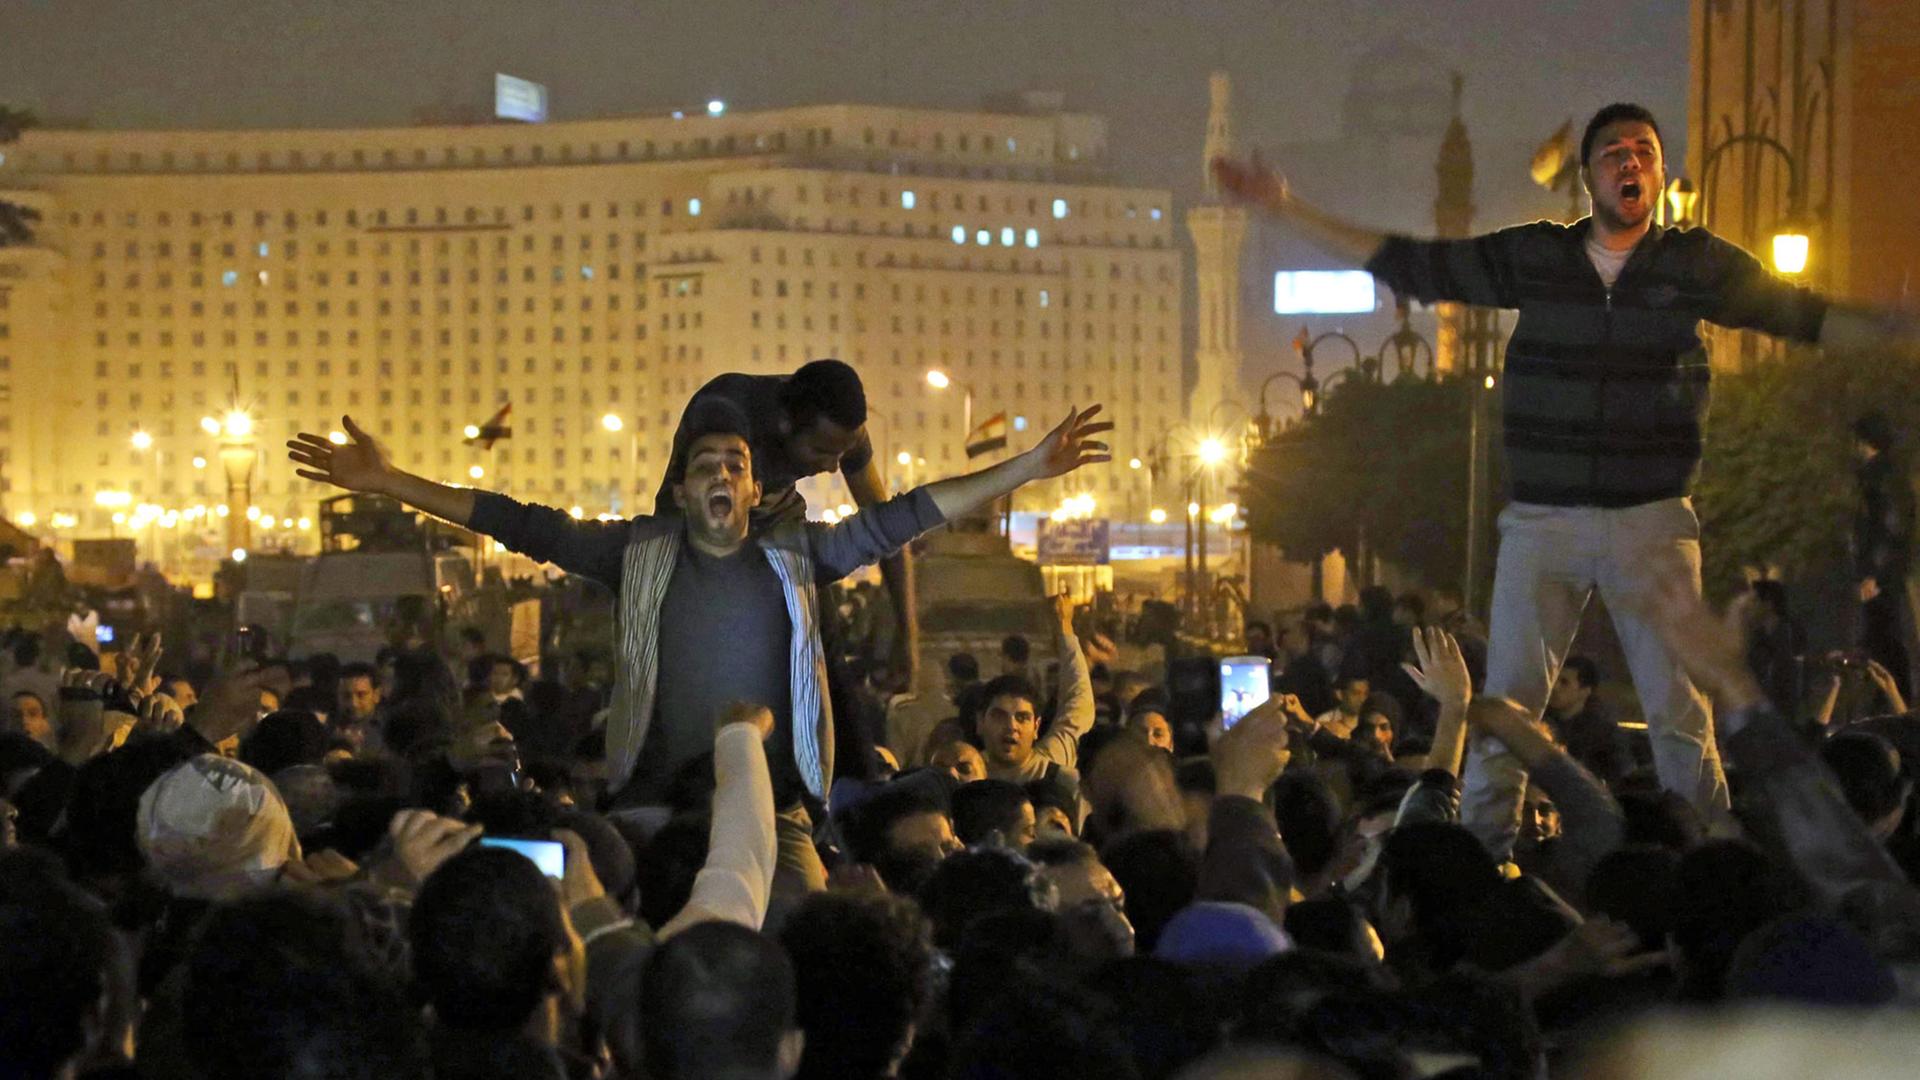 Ägyptische Anti-Mubarak-Demonstranten in Kairo skandieren Parolen nach der Aufhebung des Gerichtsverfahres gegen den ehemaligen Präsidenten